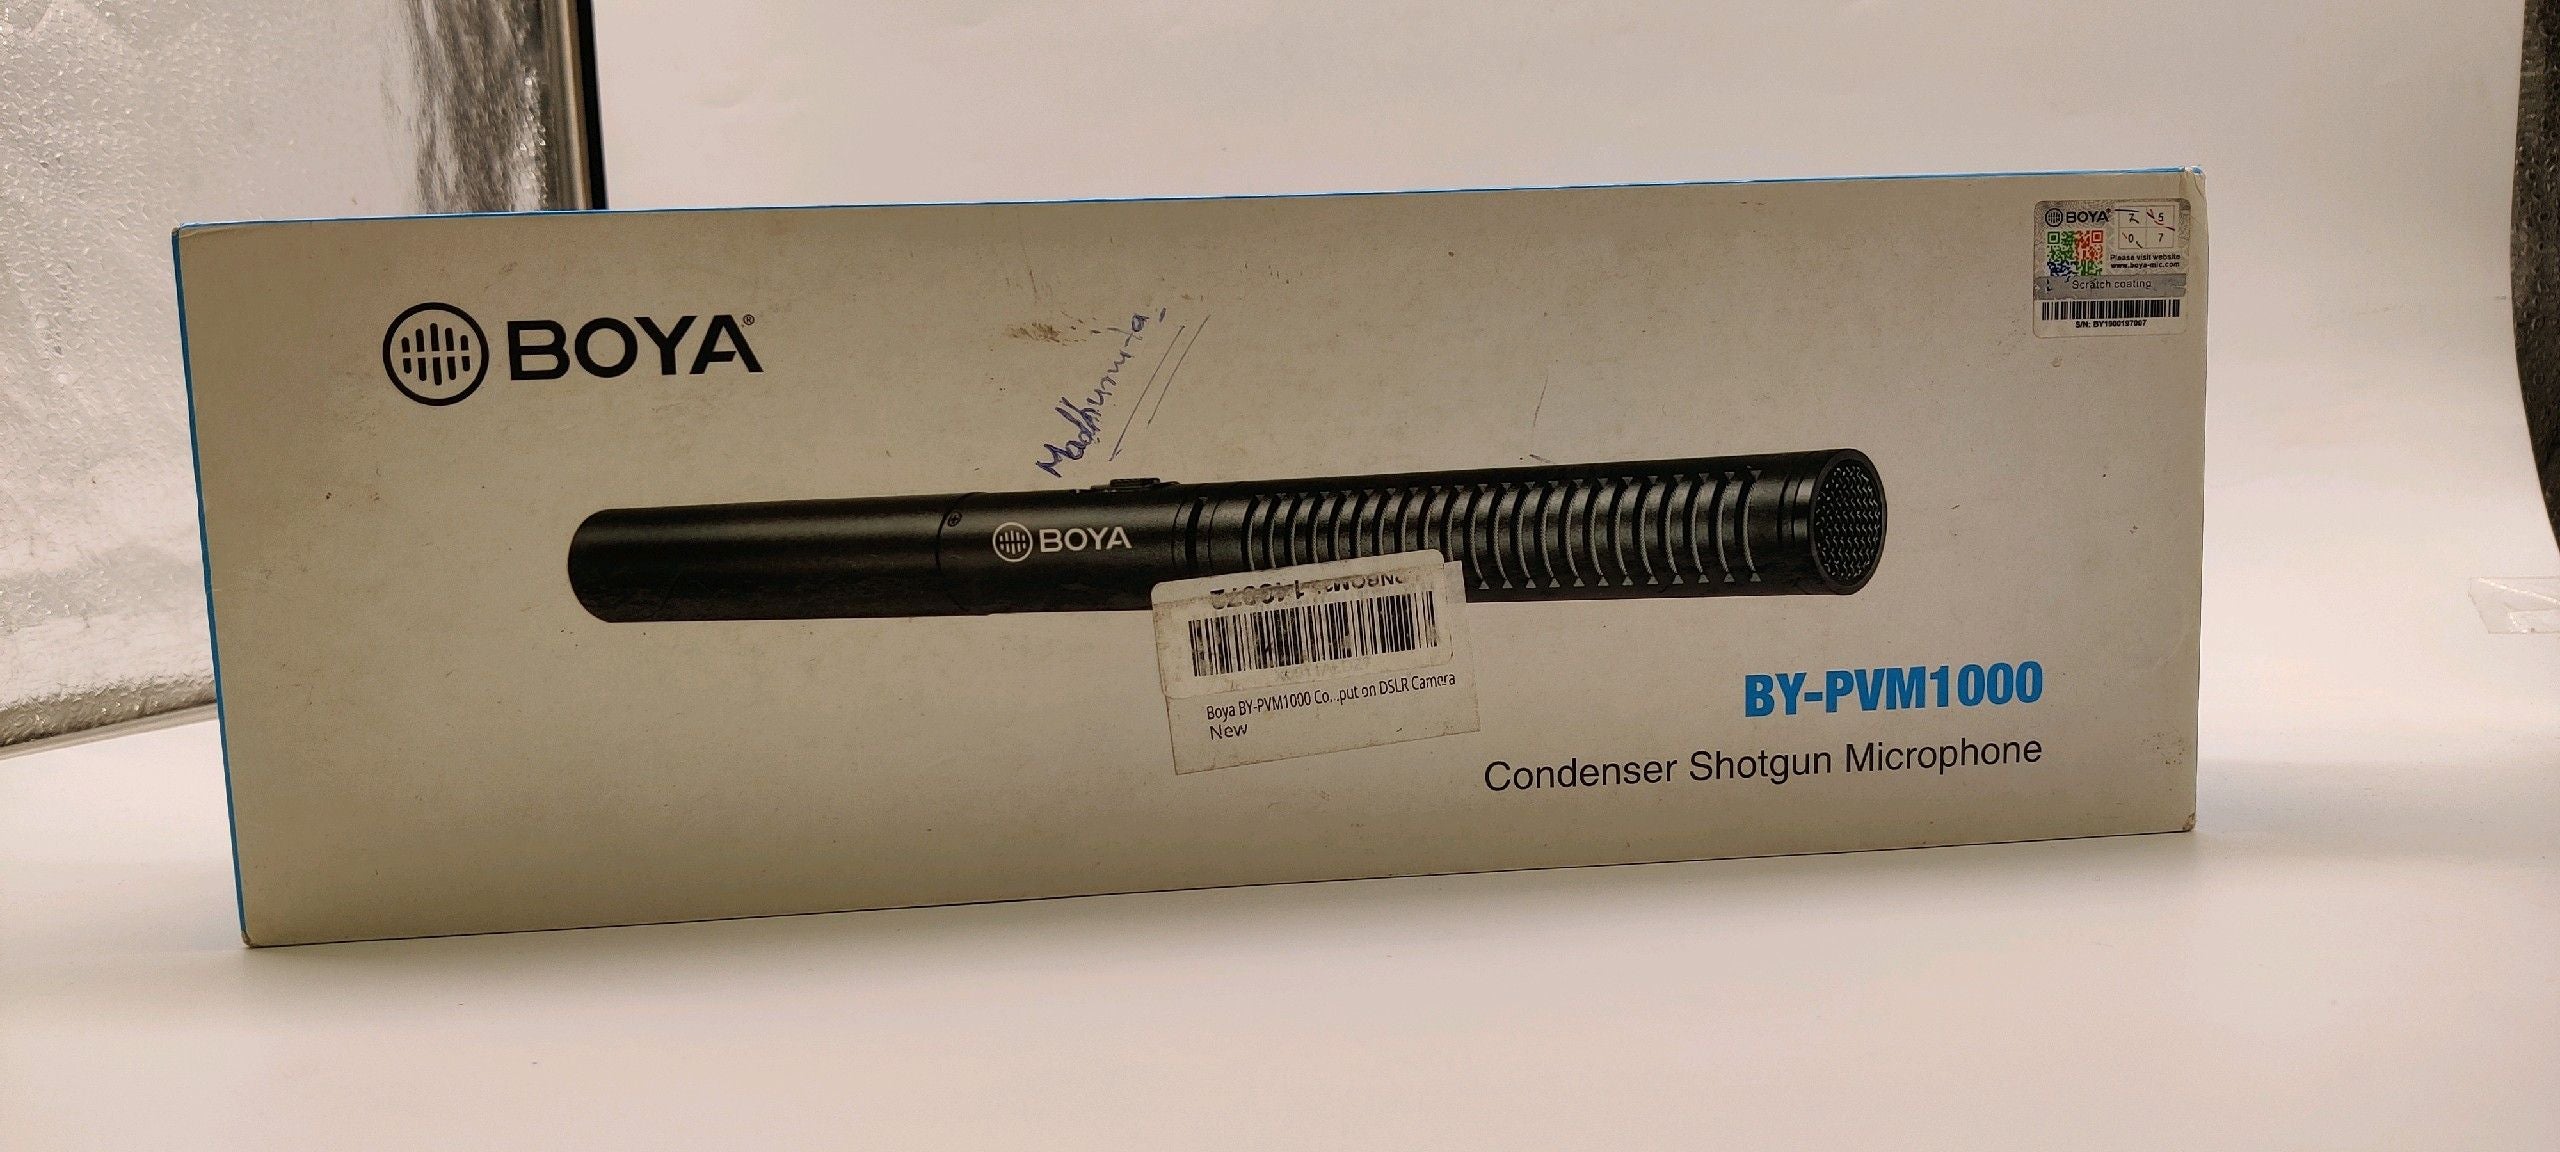 Open Box Unused Boya By Pvm 1000 Condenser Shotgun Microphone